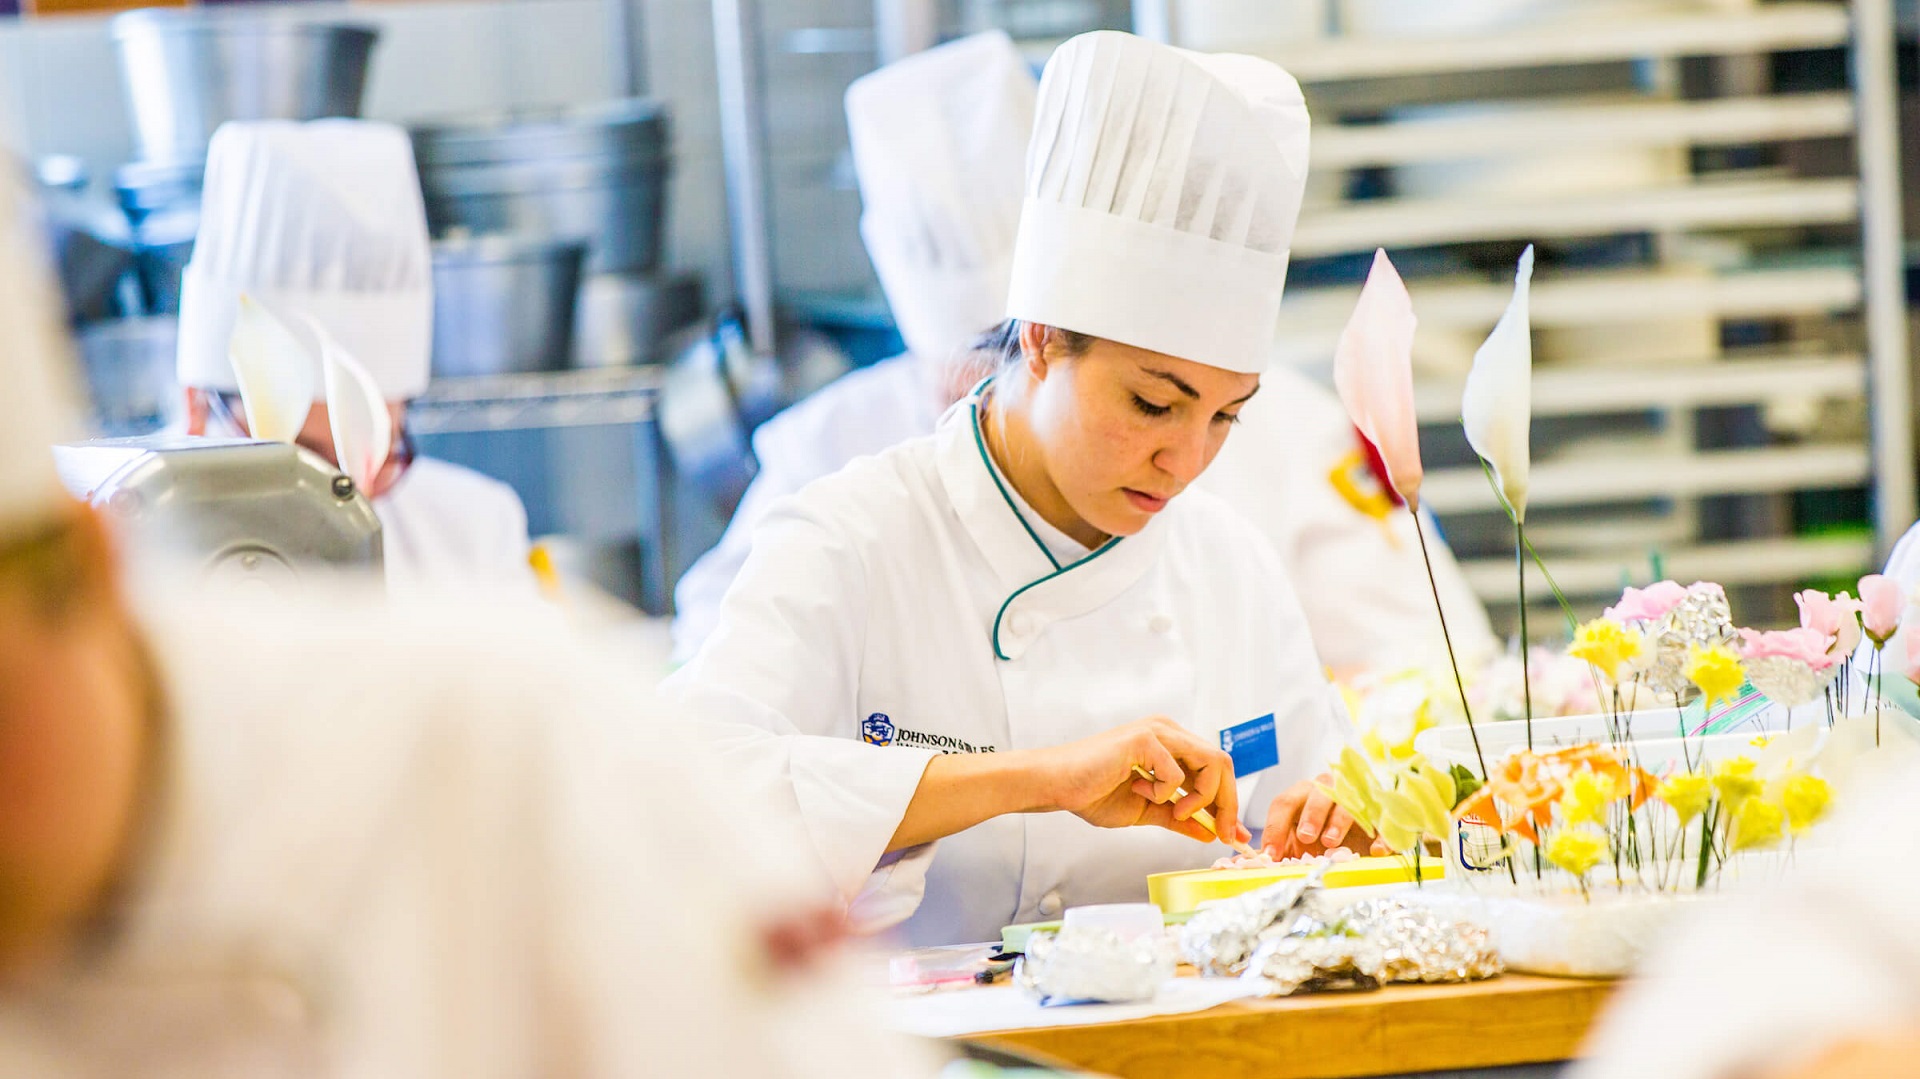 Cơ hội nhận được việc làm là rất cao khi chọn du học nghề Áo, đặc biệt trong ngành làm bánh